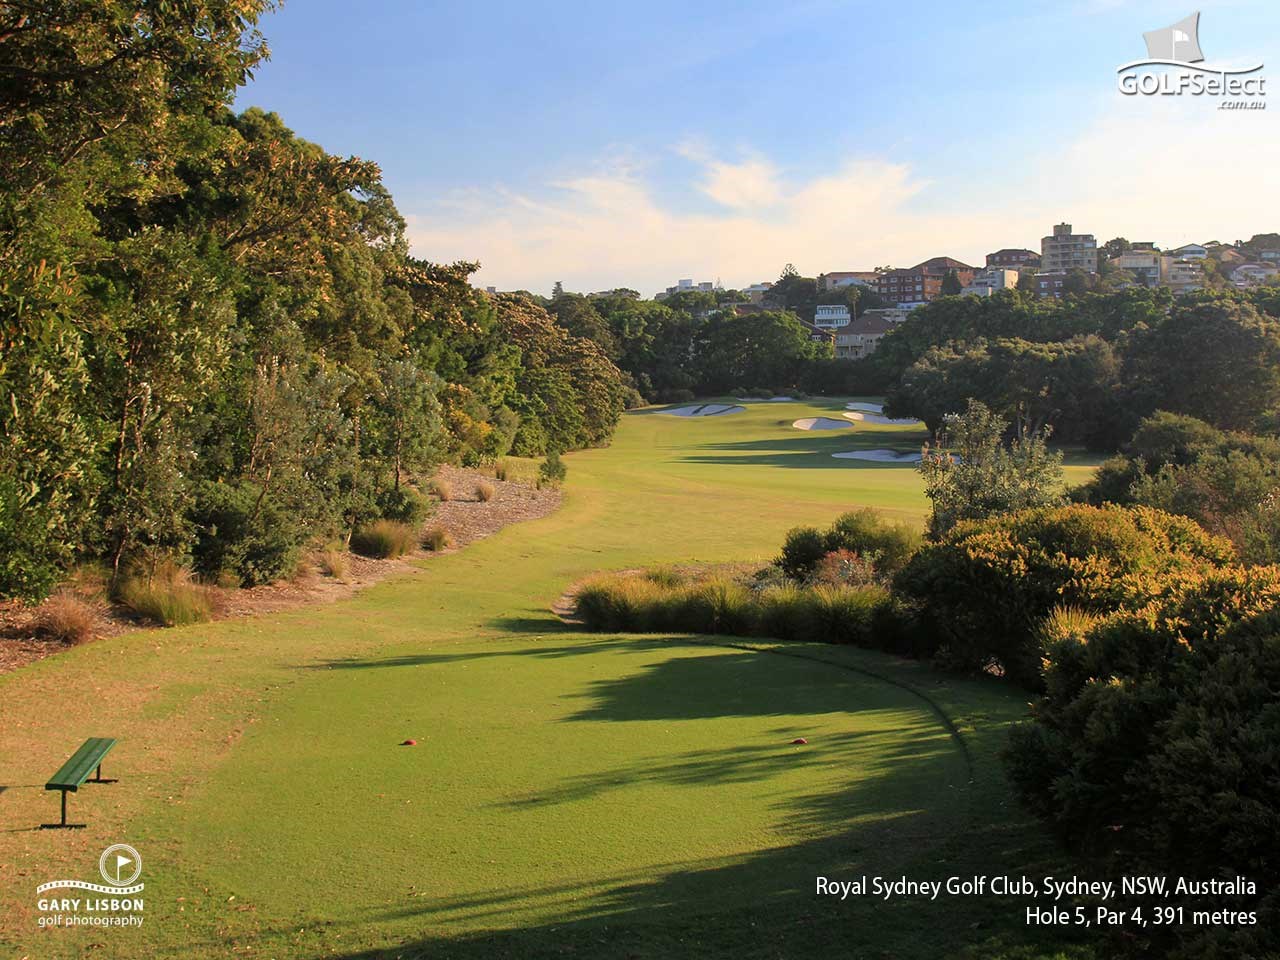 Royal Sydney Golf Club Hole 5, Par 4, 391 metres